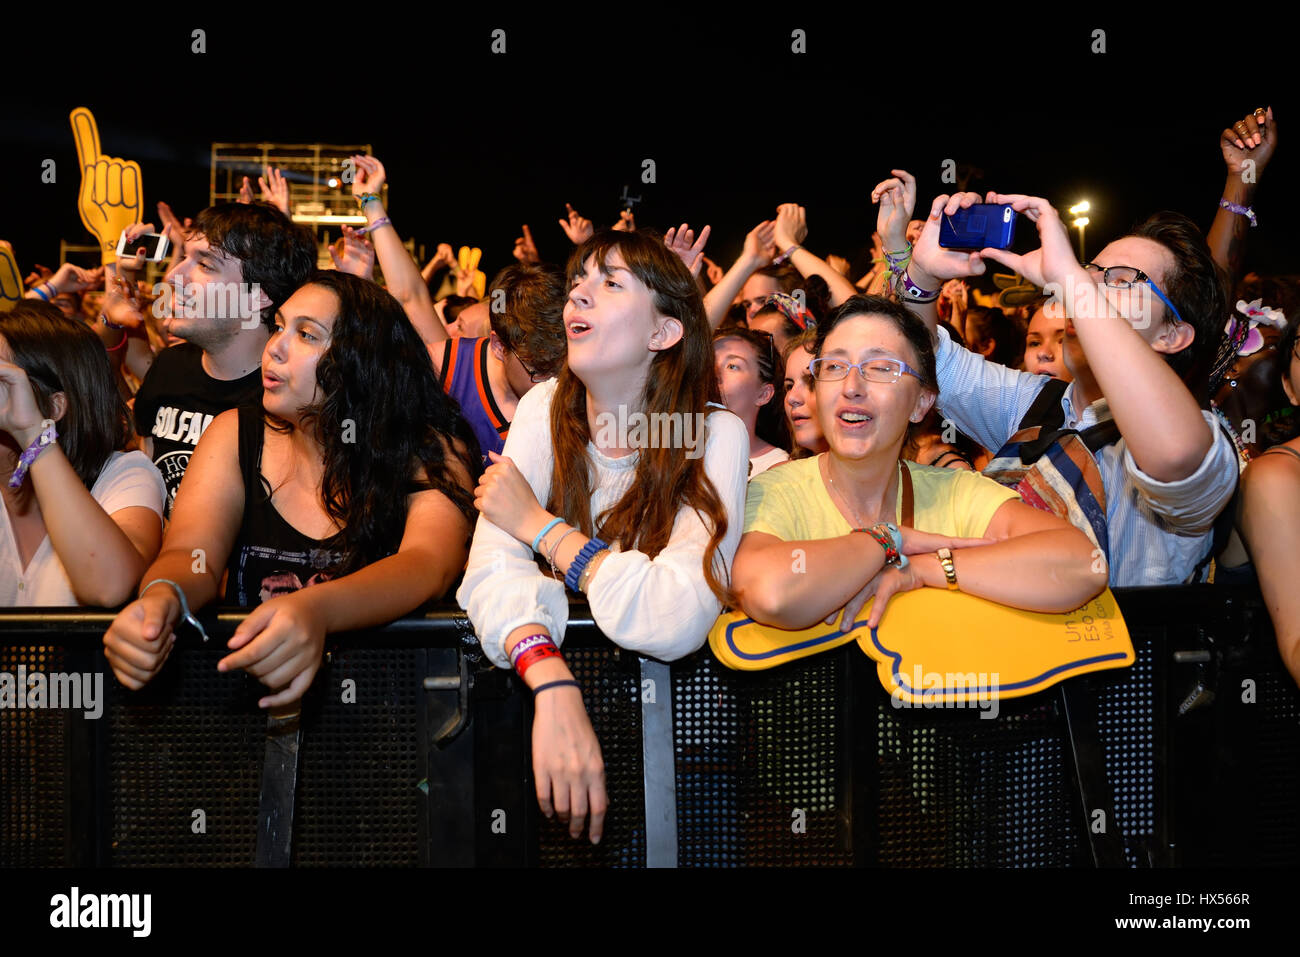 BENICASSIM, ESPAGNE - 16 juil : foule lors d'un concert au Festival de Musique le 16 juillet 2015 à Benicassim, Espagne. Banque D'Images